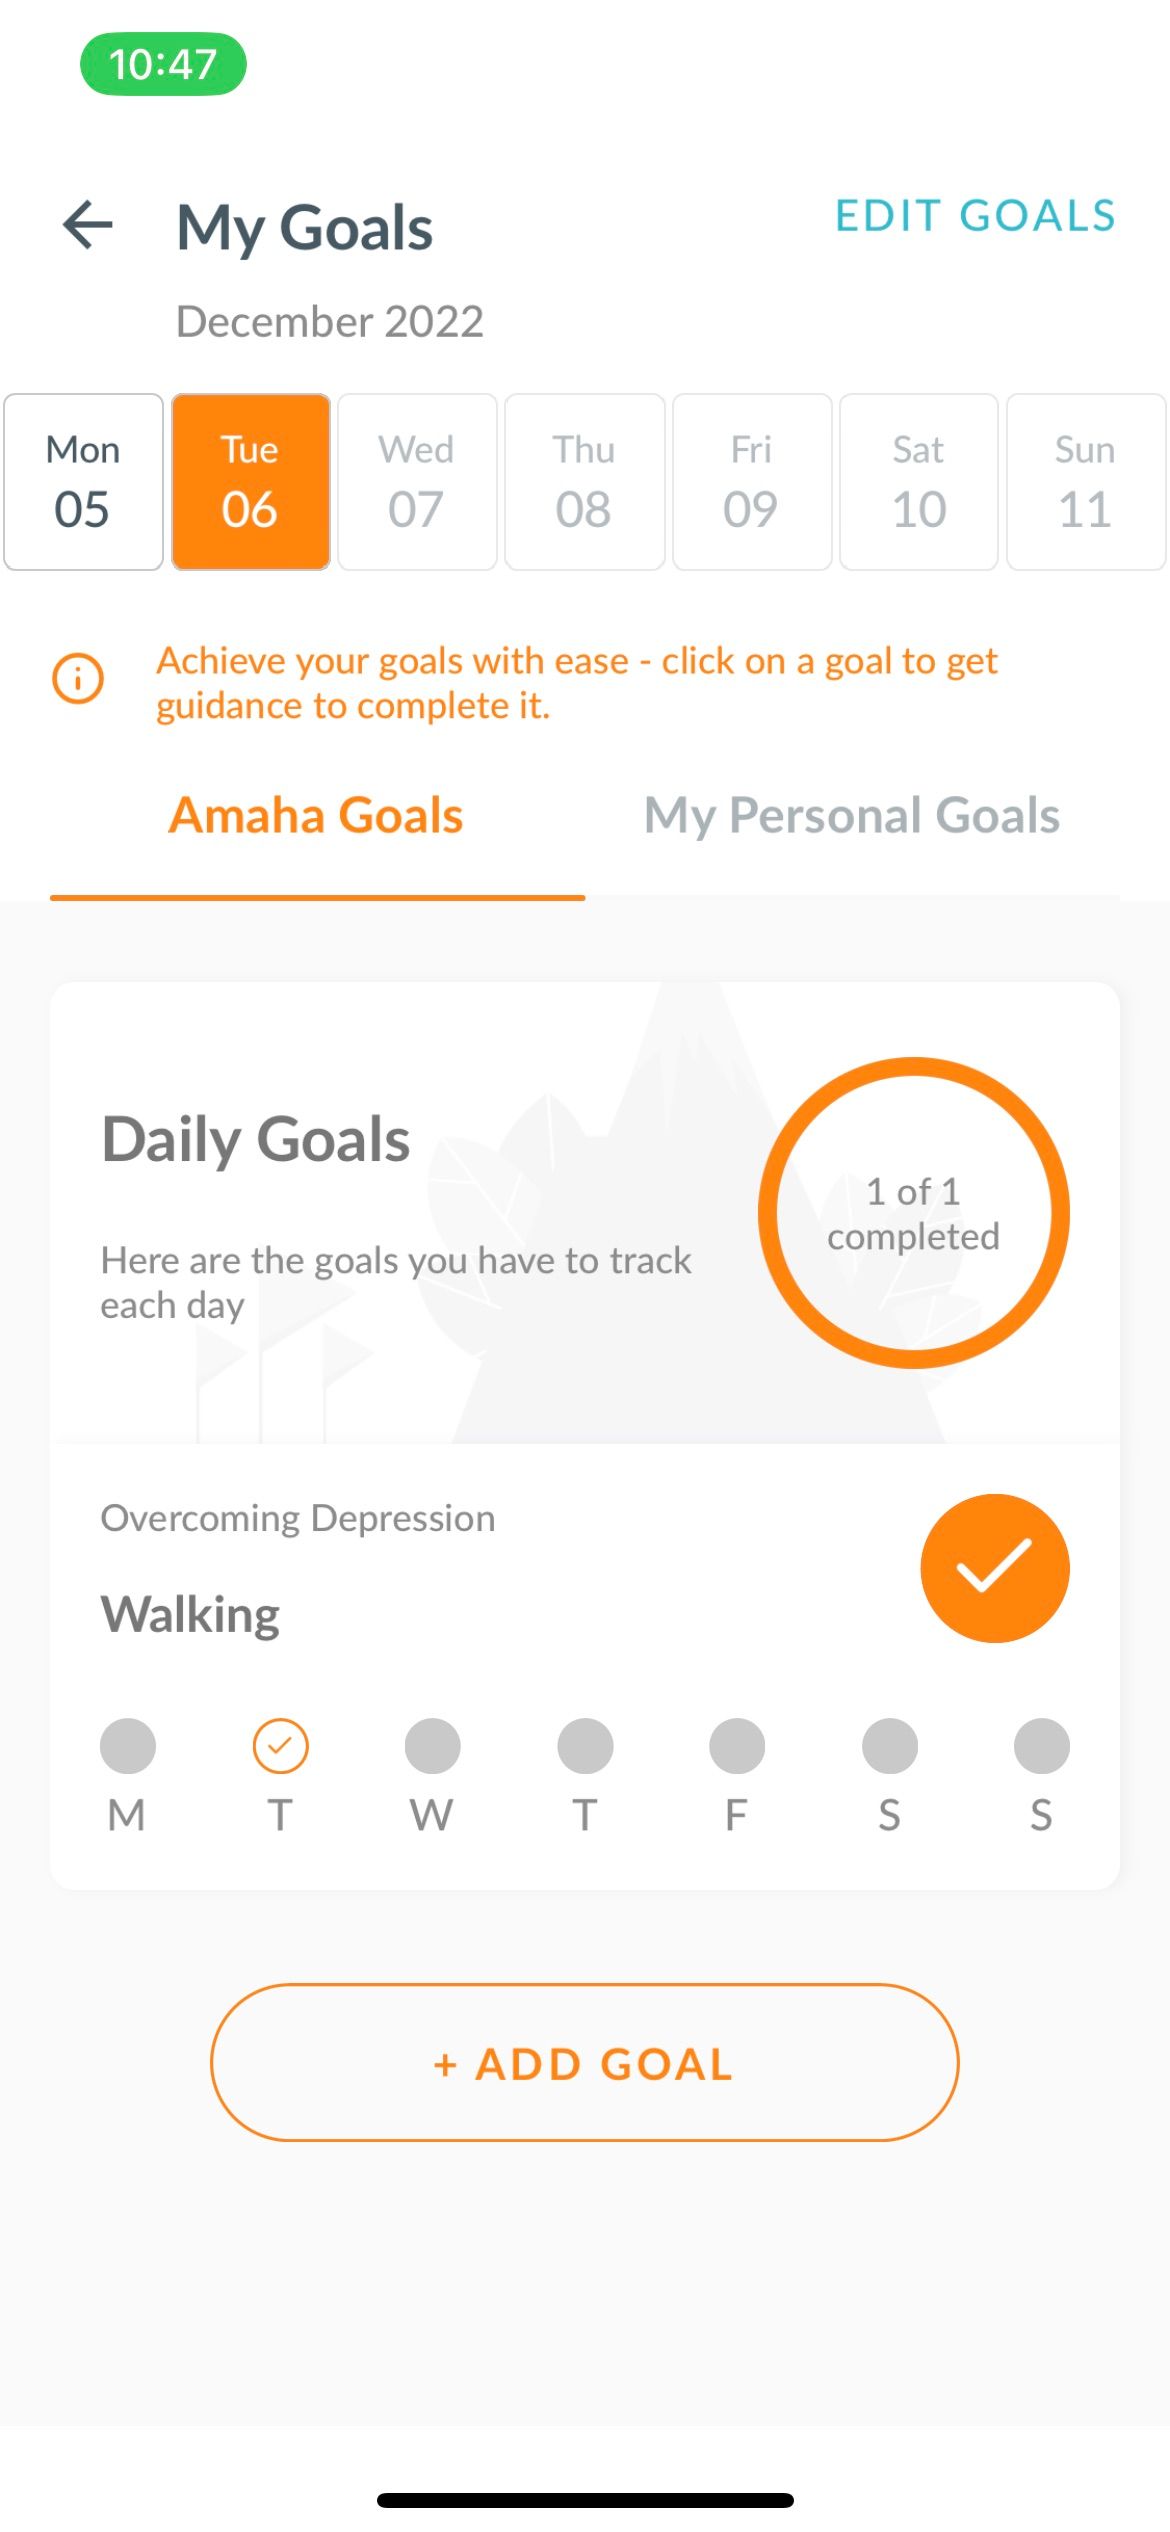 Amaha goals page